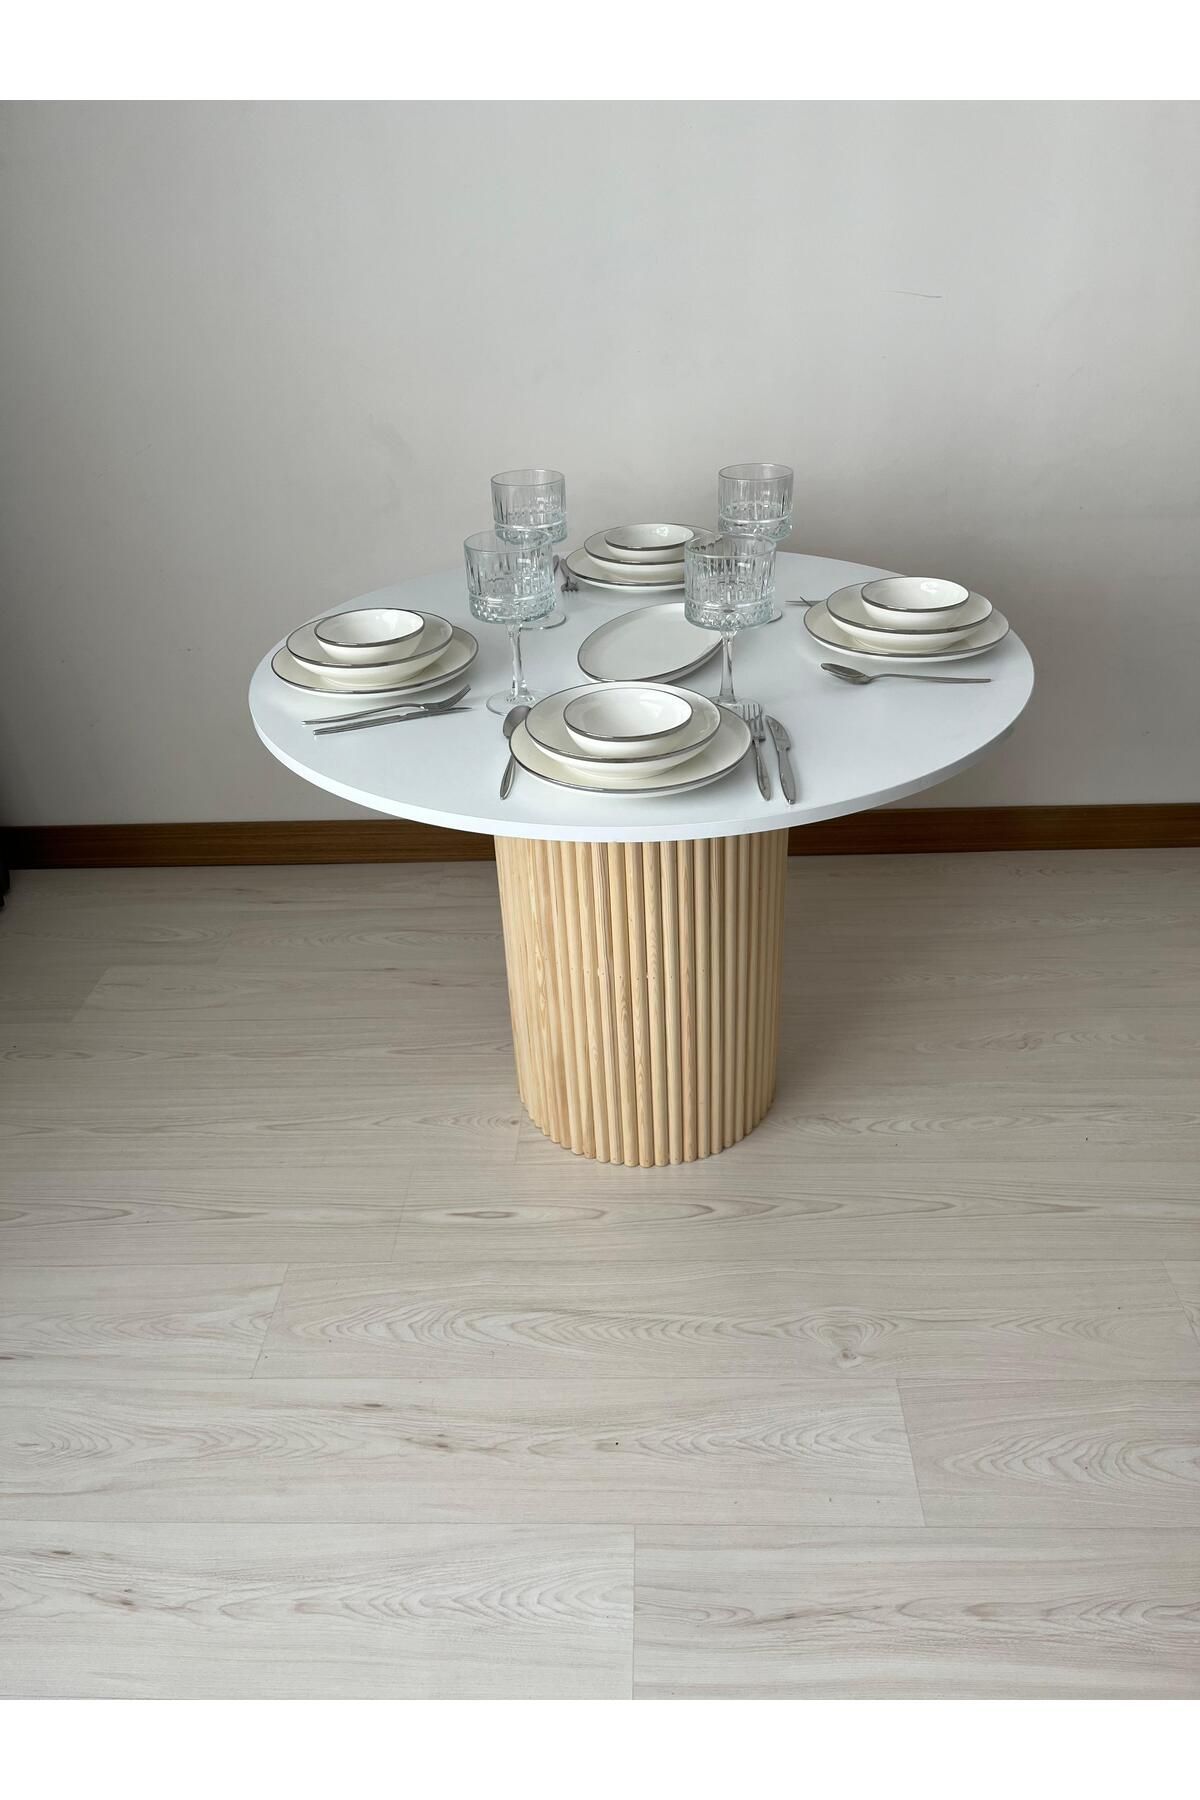 Seyvey Dizayn Özel tasarım mega ayak masa mutfak masası yemek masası 103 cm